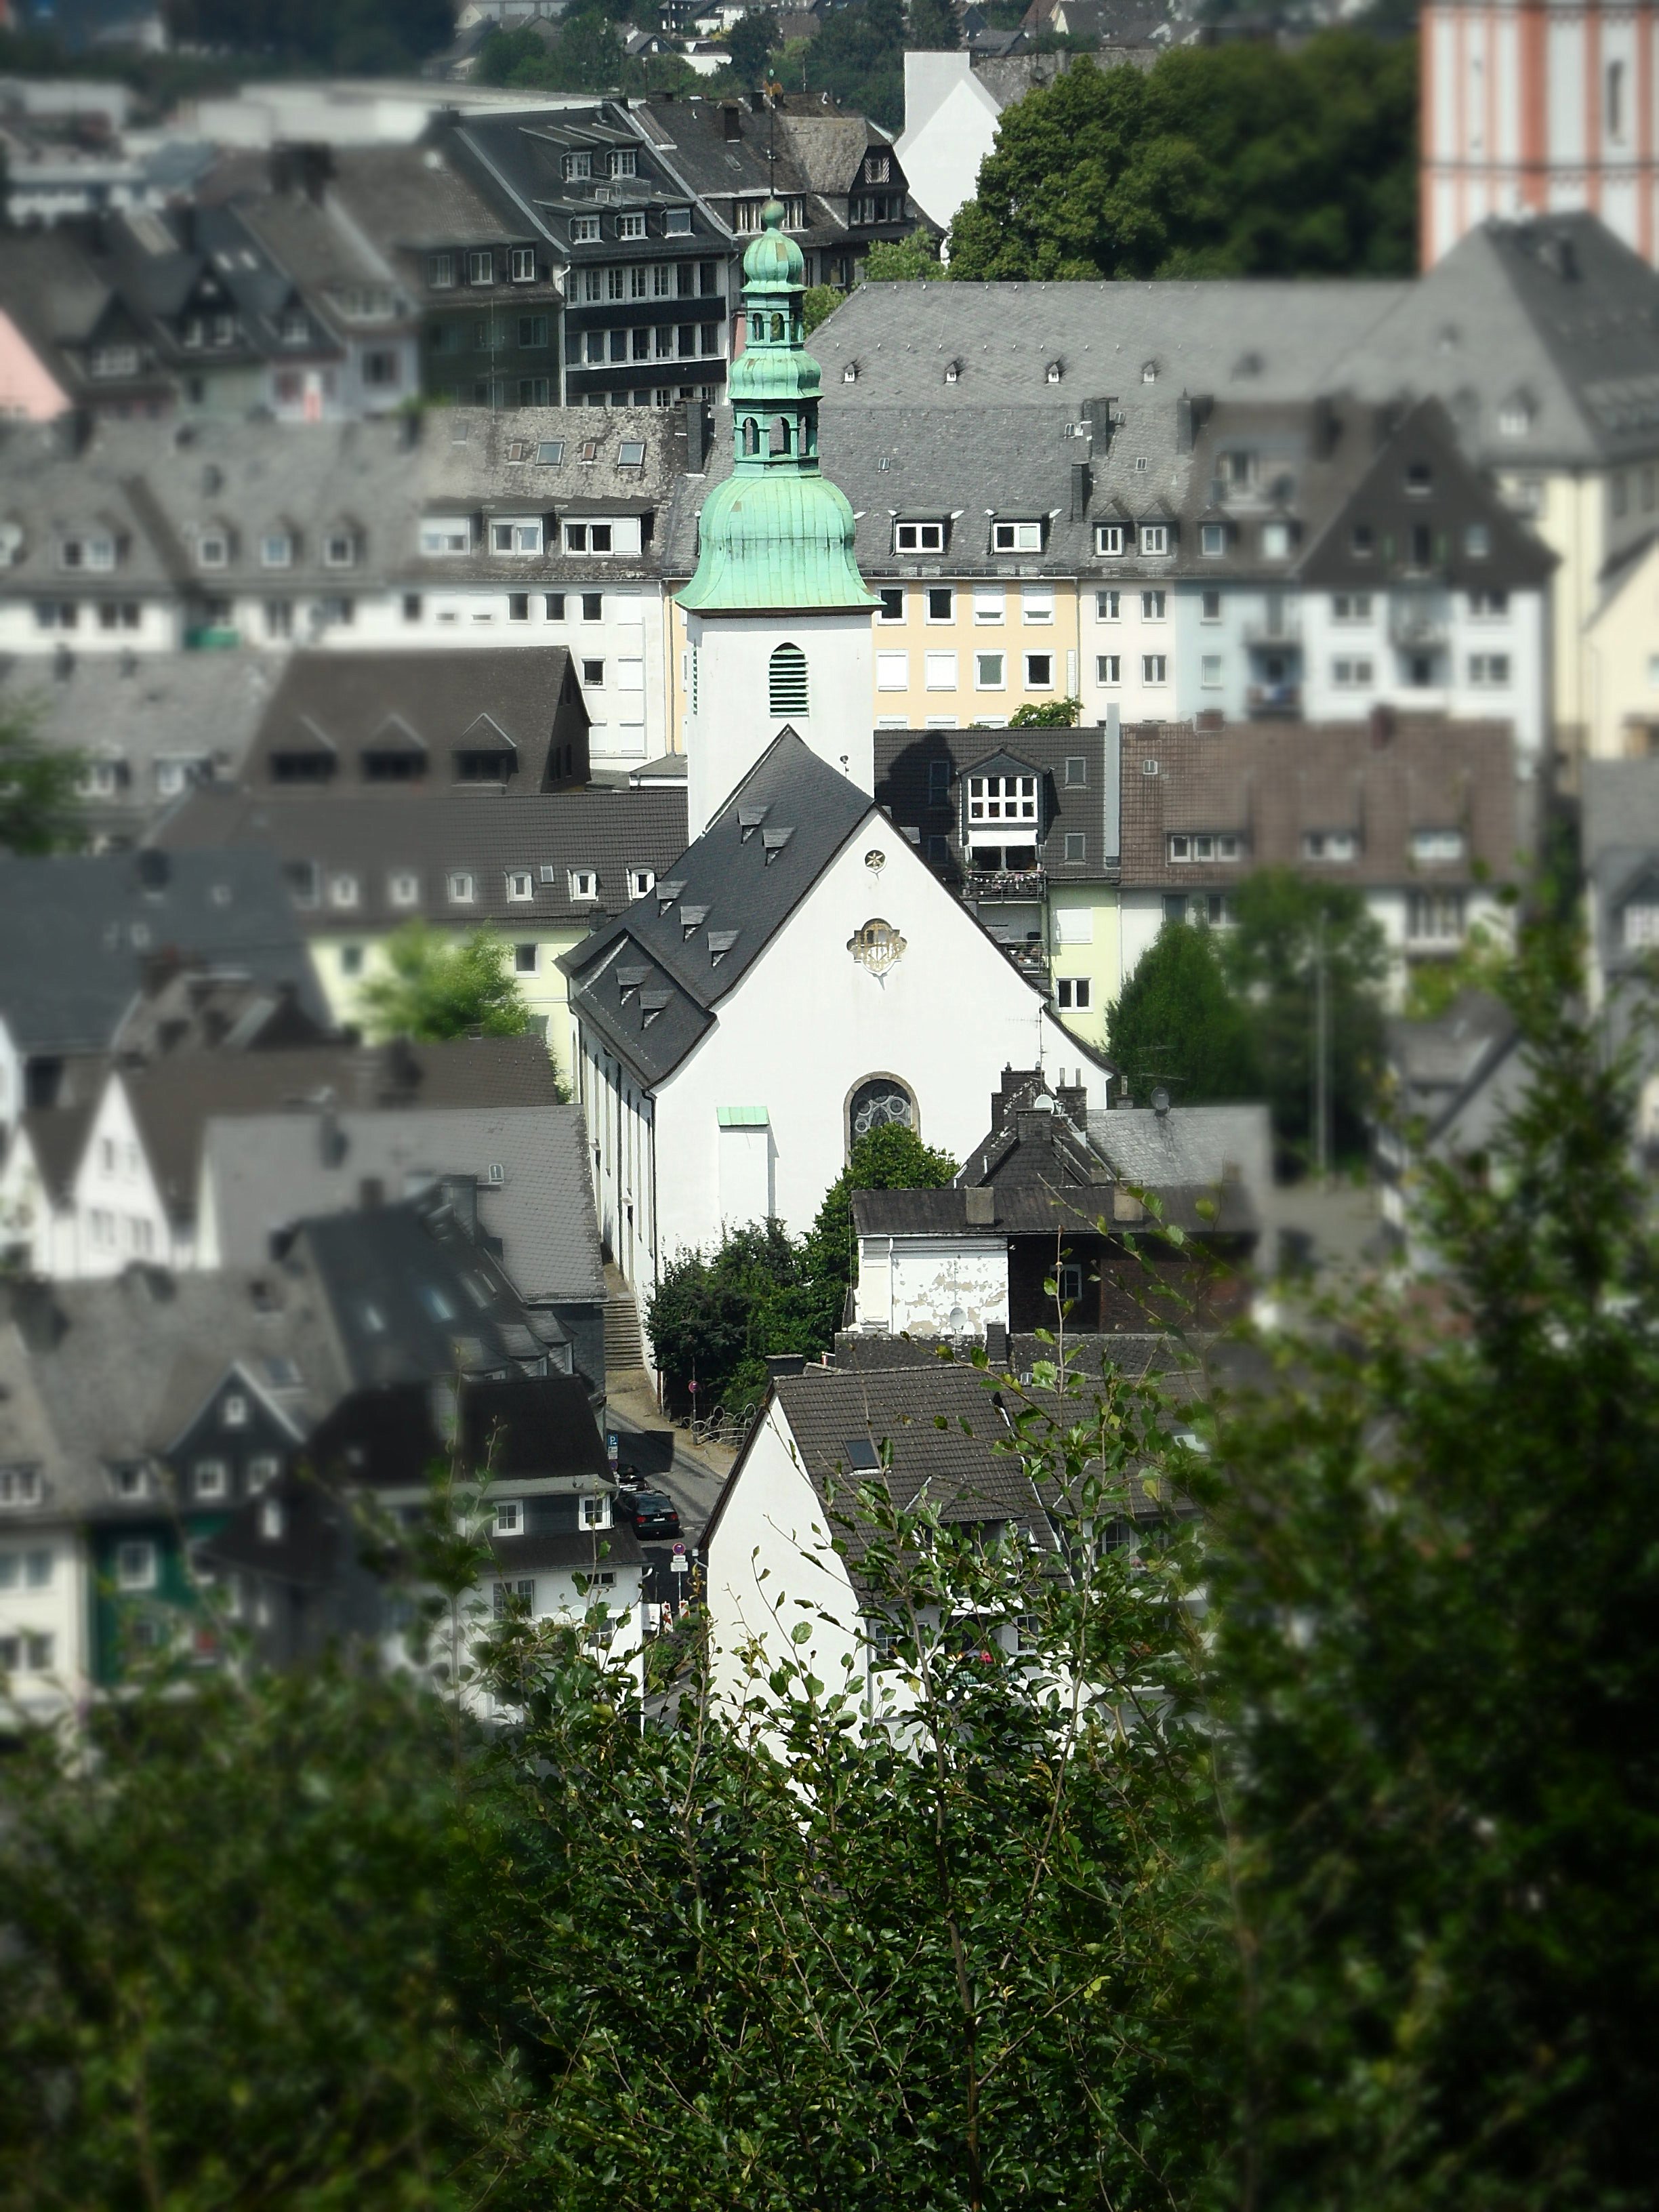 Marienkirche Siegen von Häusling aus gesehen. (Bild aus Pfarrnachrichten)